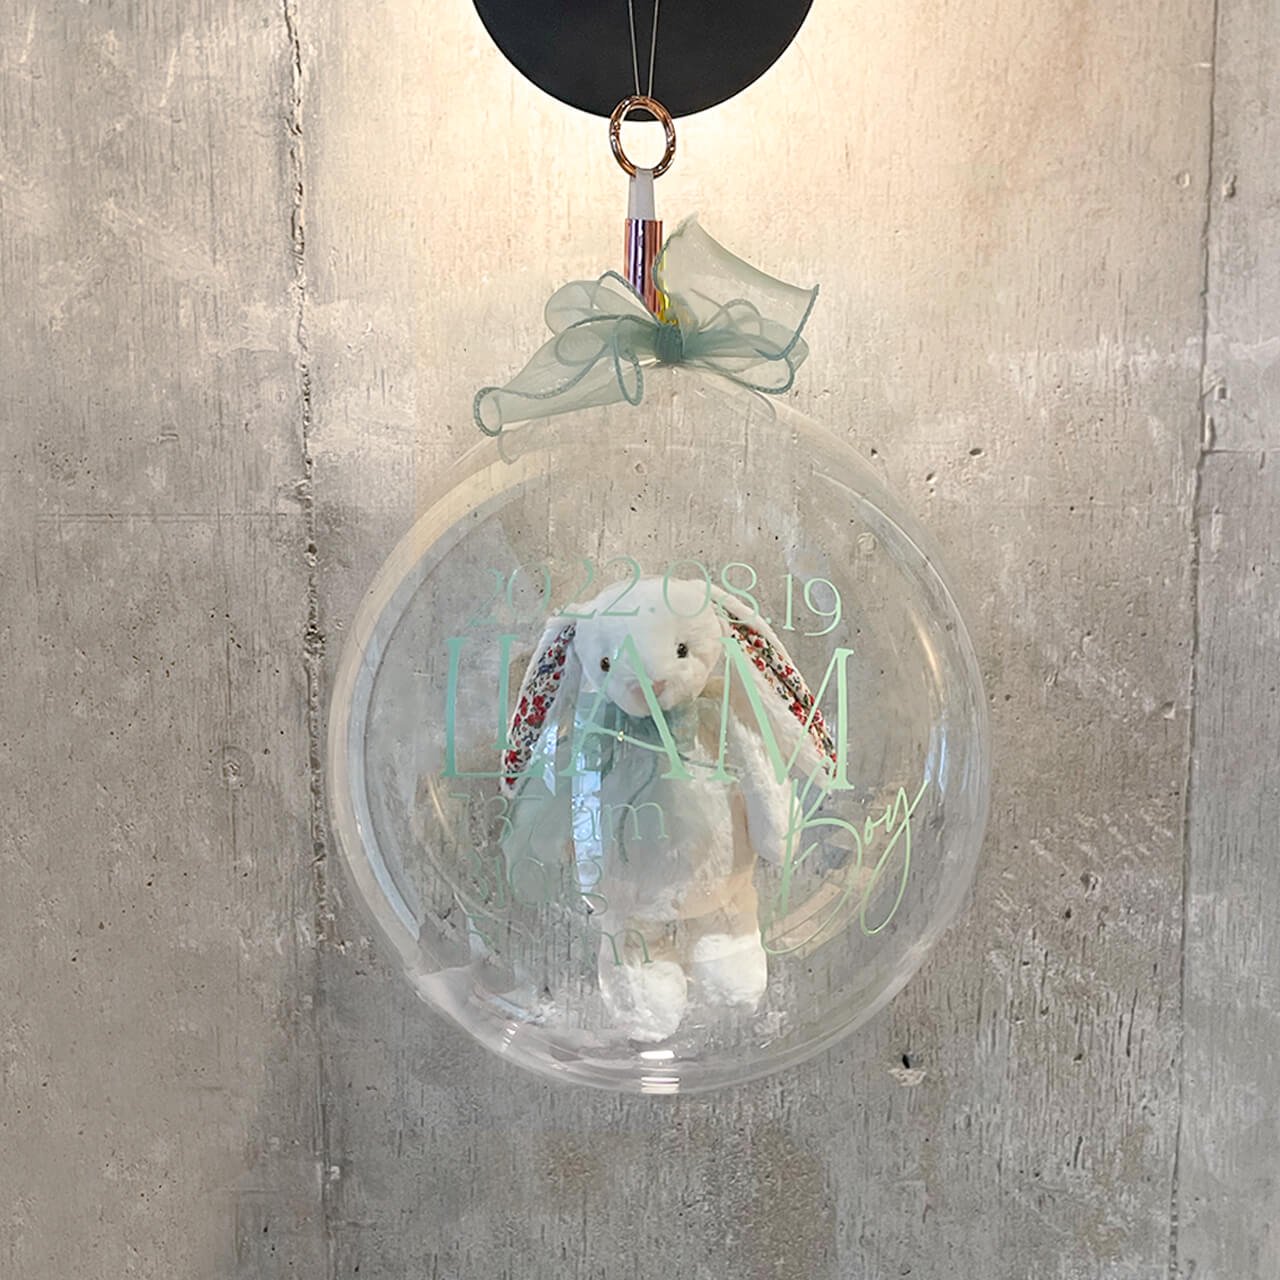 Jellycat white liberty - Moonlit Balloon - ジェリーキャットのぬいぐるみが入った月のようなバルーン